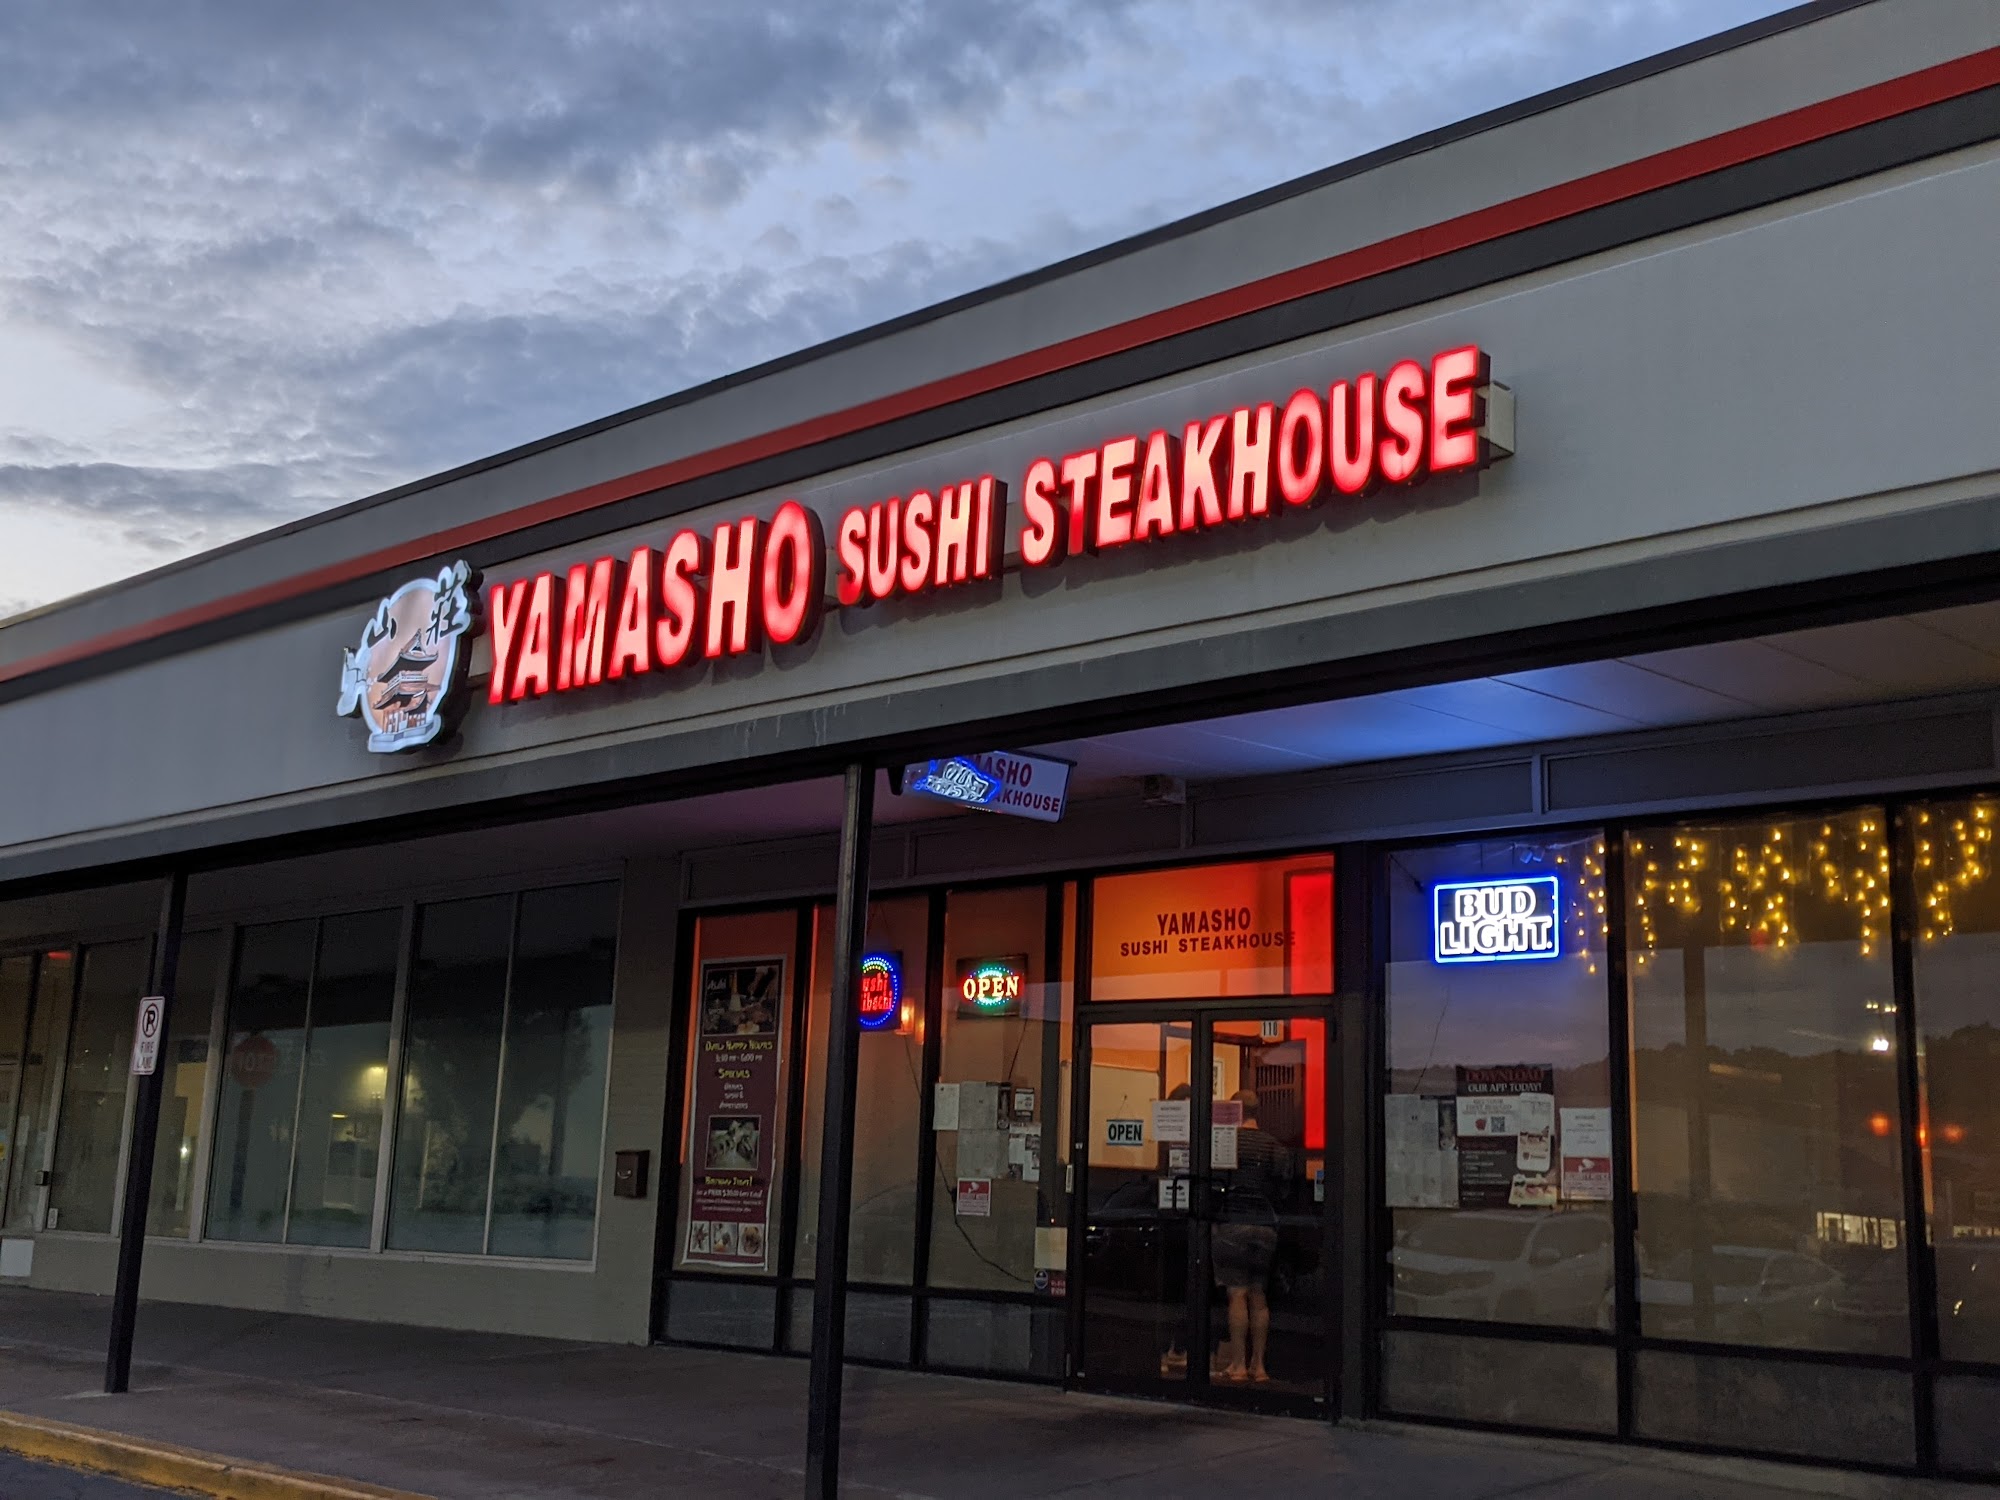 Yamasho sushi steakhouse